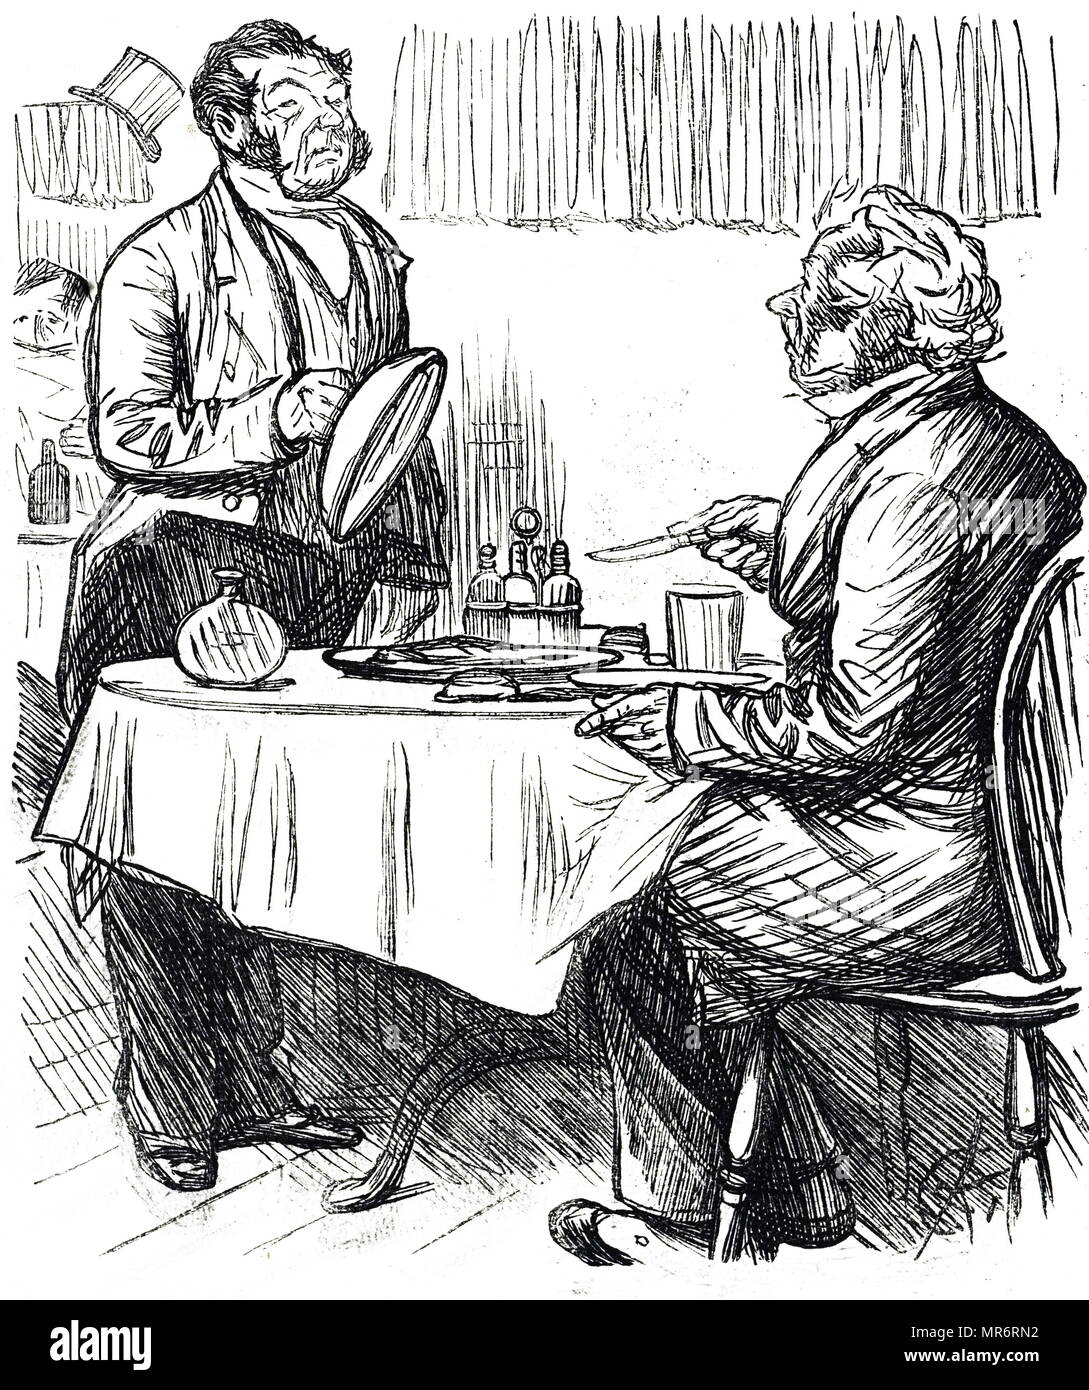 Cartoon comentando la condición de alimentos a menudo servido en Londres casas para comer. Fecha del siglo XIX Foto de stock